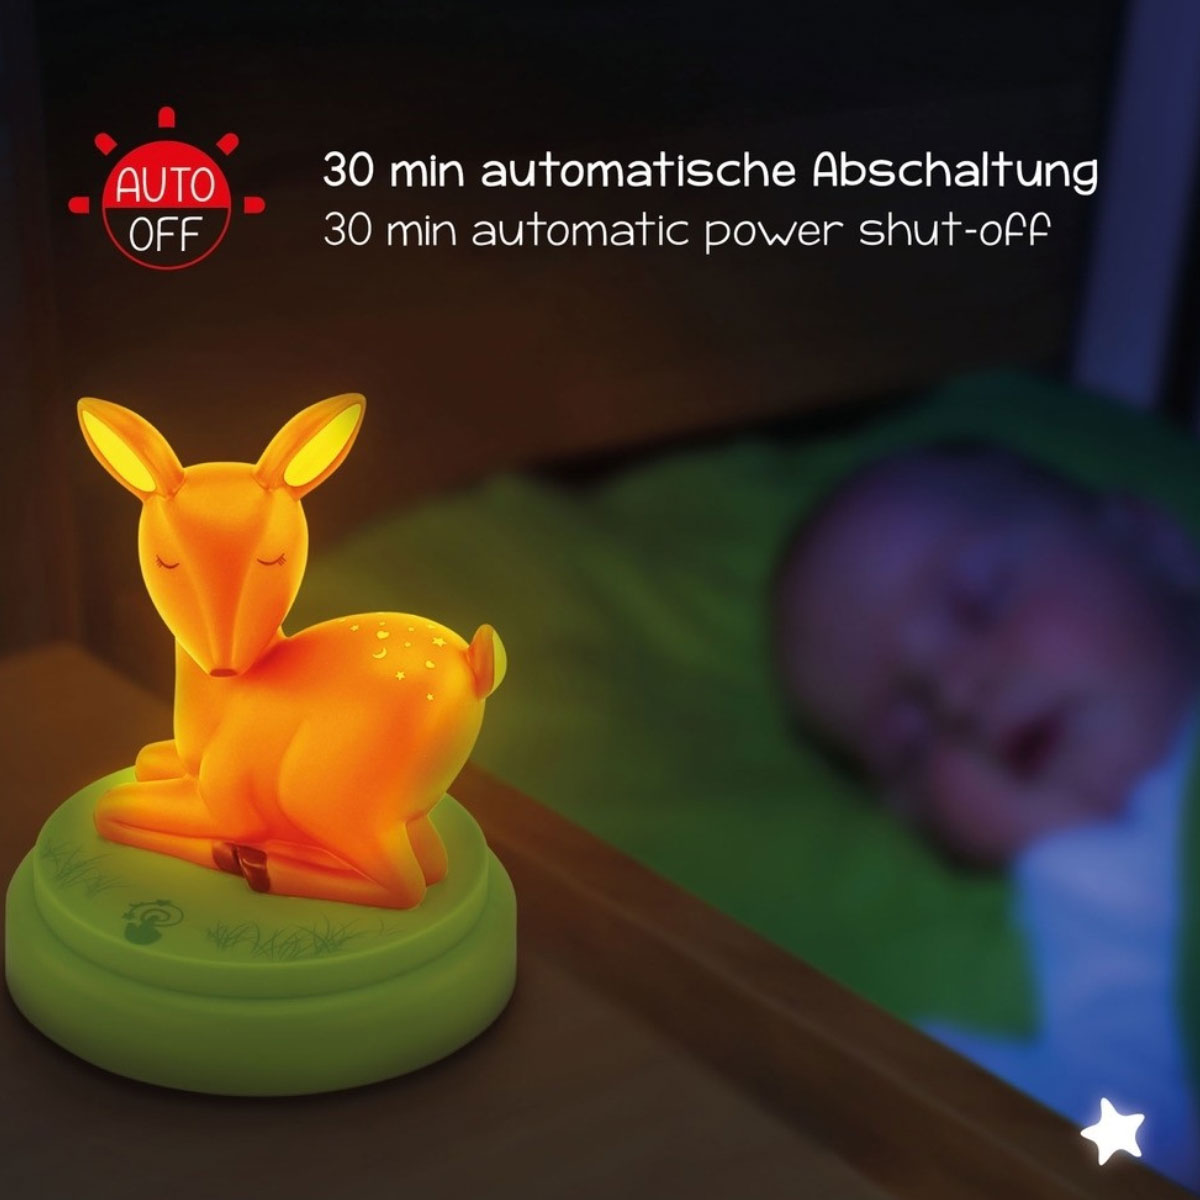 Mobiles Nachtlicht Reh Mobile, die LED-LICHT Einschlafhilfe für Kinder als Reh-Figur